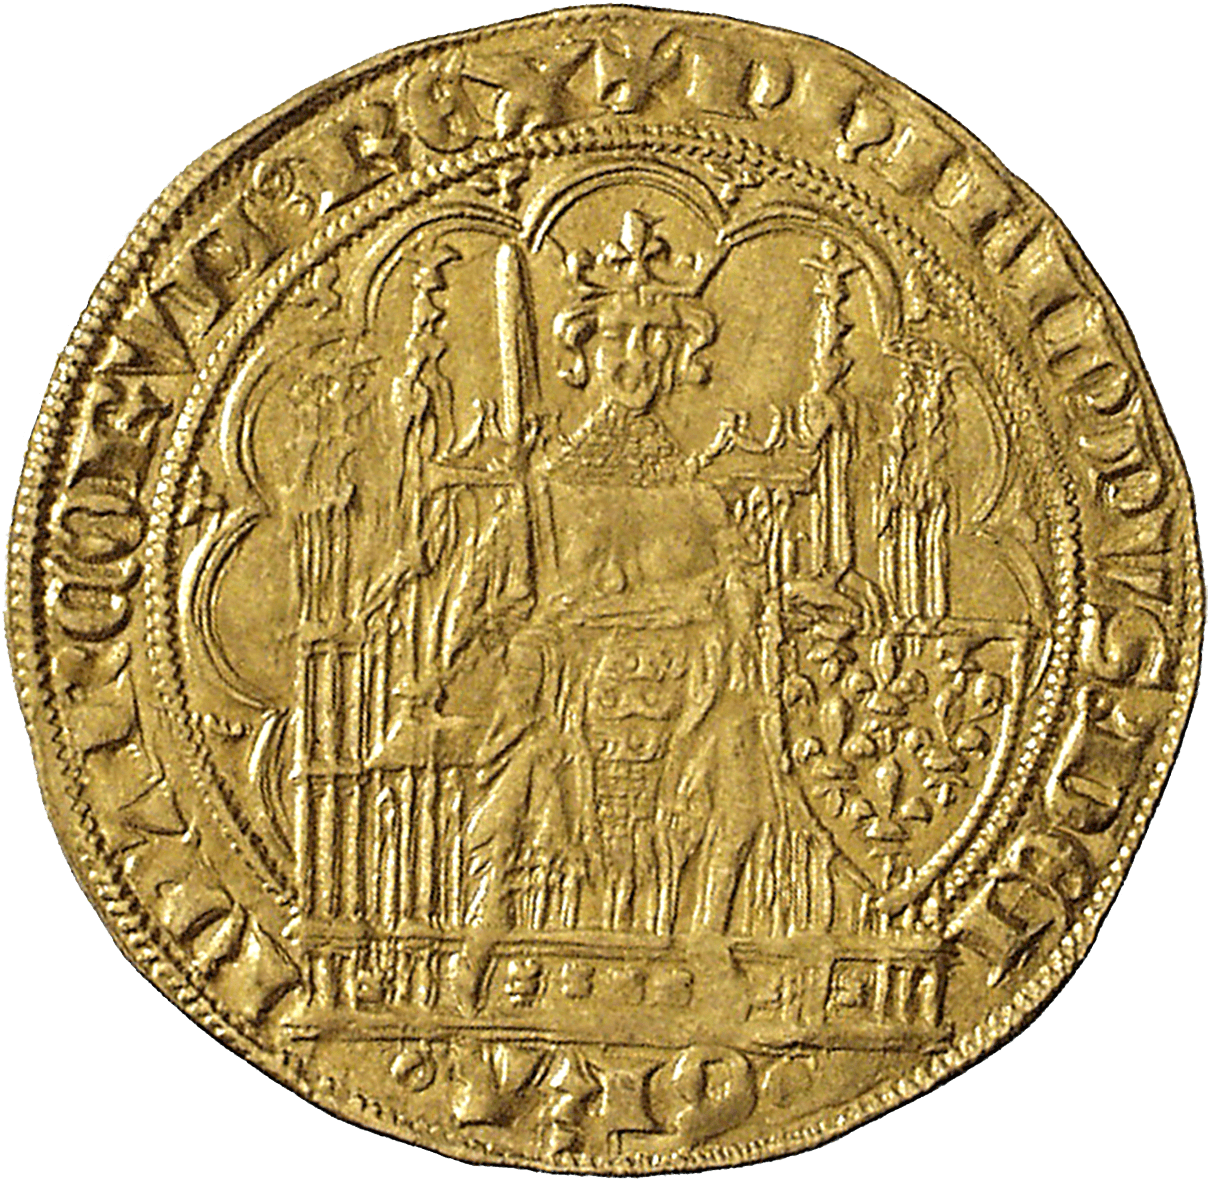 Kingdom of France, Philip VI of Valois, Ecu d'or à la chaise (obverse)